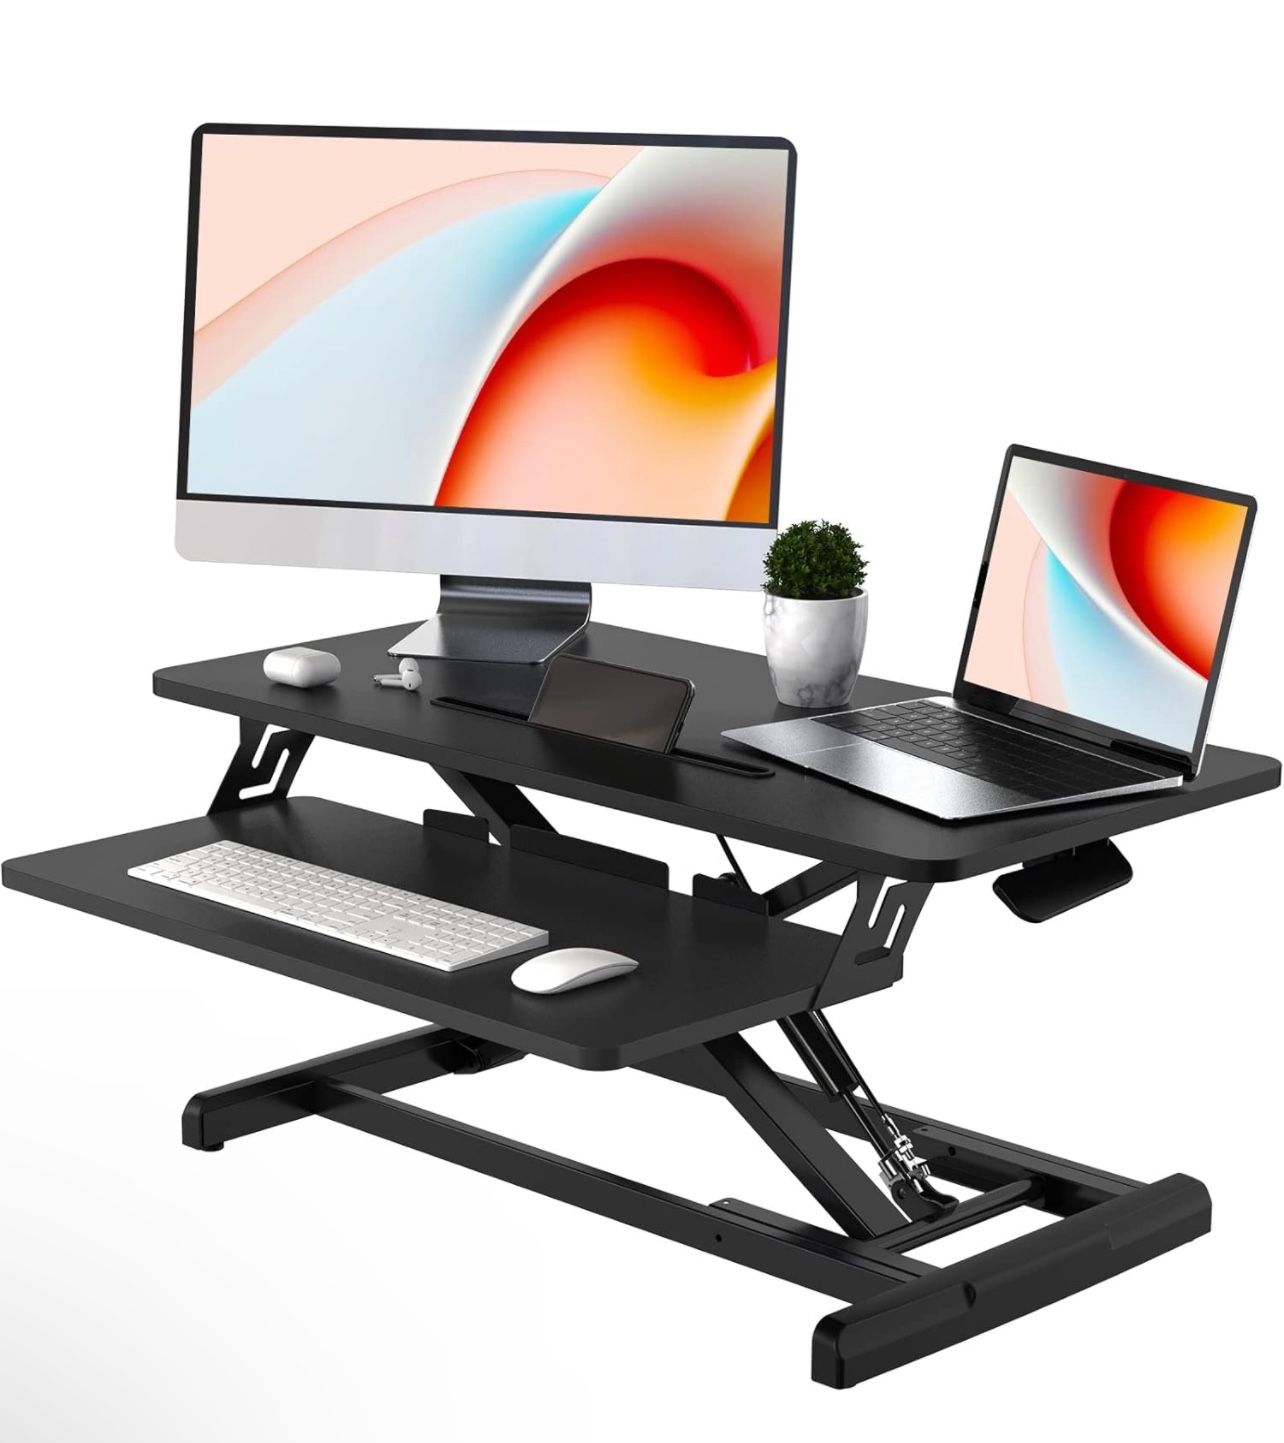 JOY worker Standing Desk Converter, 32" Wide Height Adjustable Sit Stand Up Desk Riser with Keyboard Tray, Desktop Workstation Riser for Home Office C